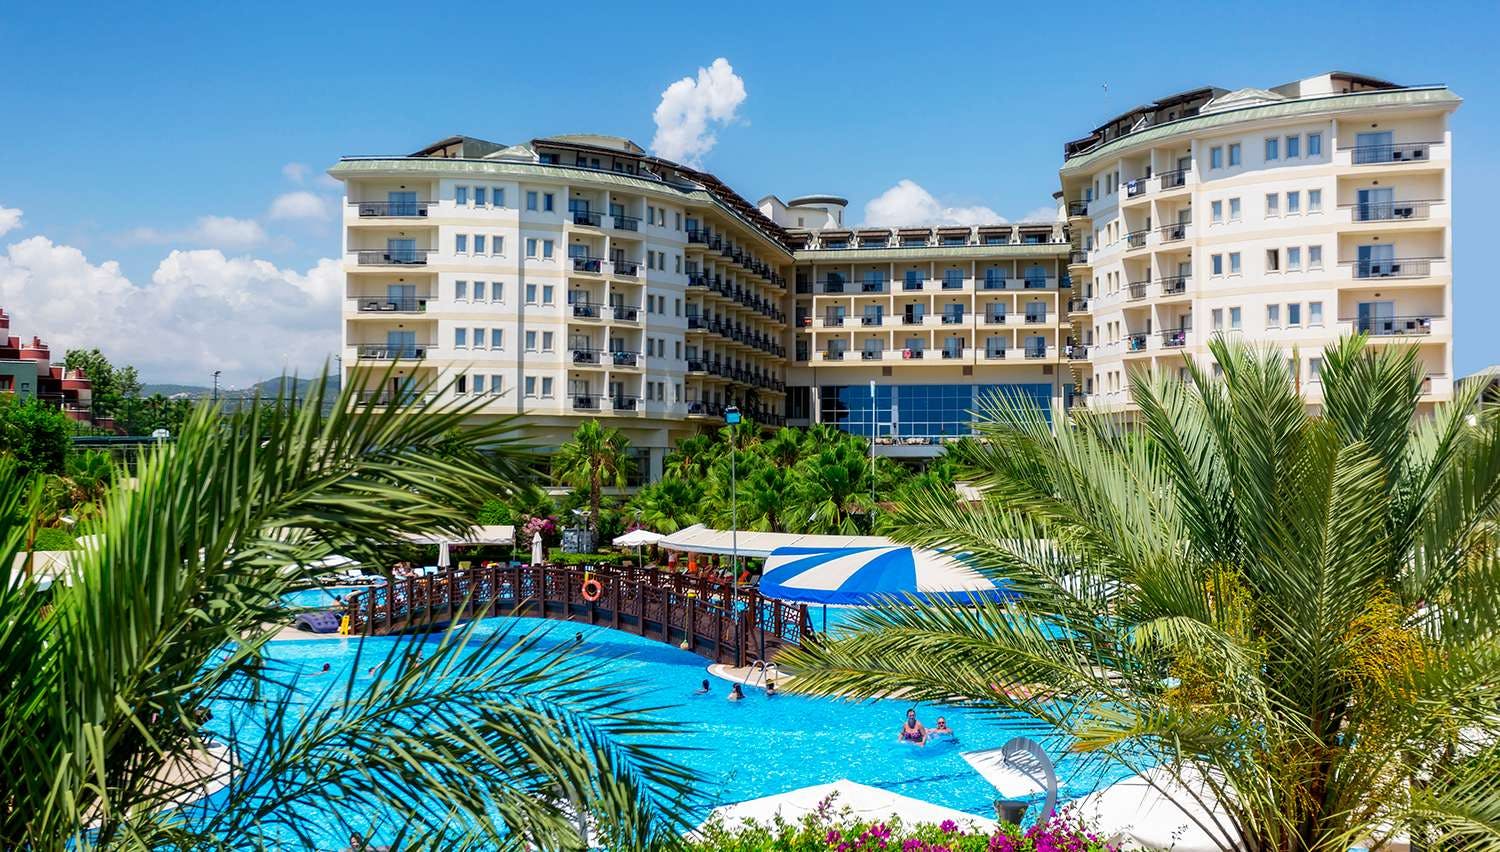 Mukarnas SPA & Resort 5* viešbutyje yra didelis pramogų pasirinkimas aktyviam poilsiui bei vandens parkas